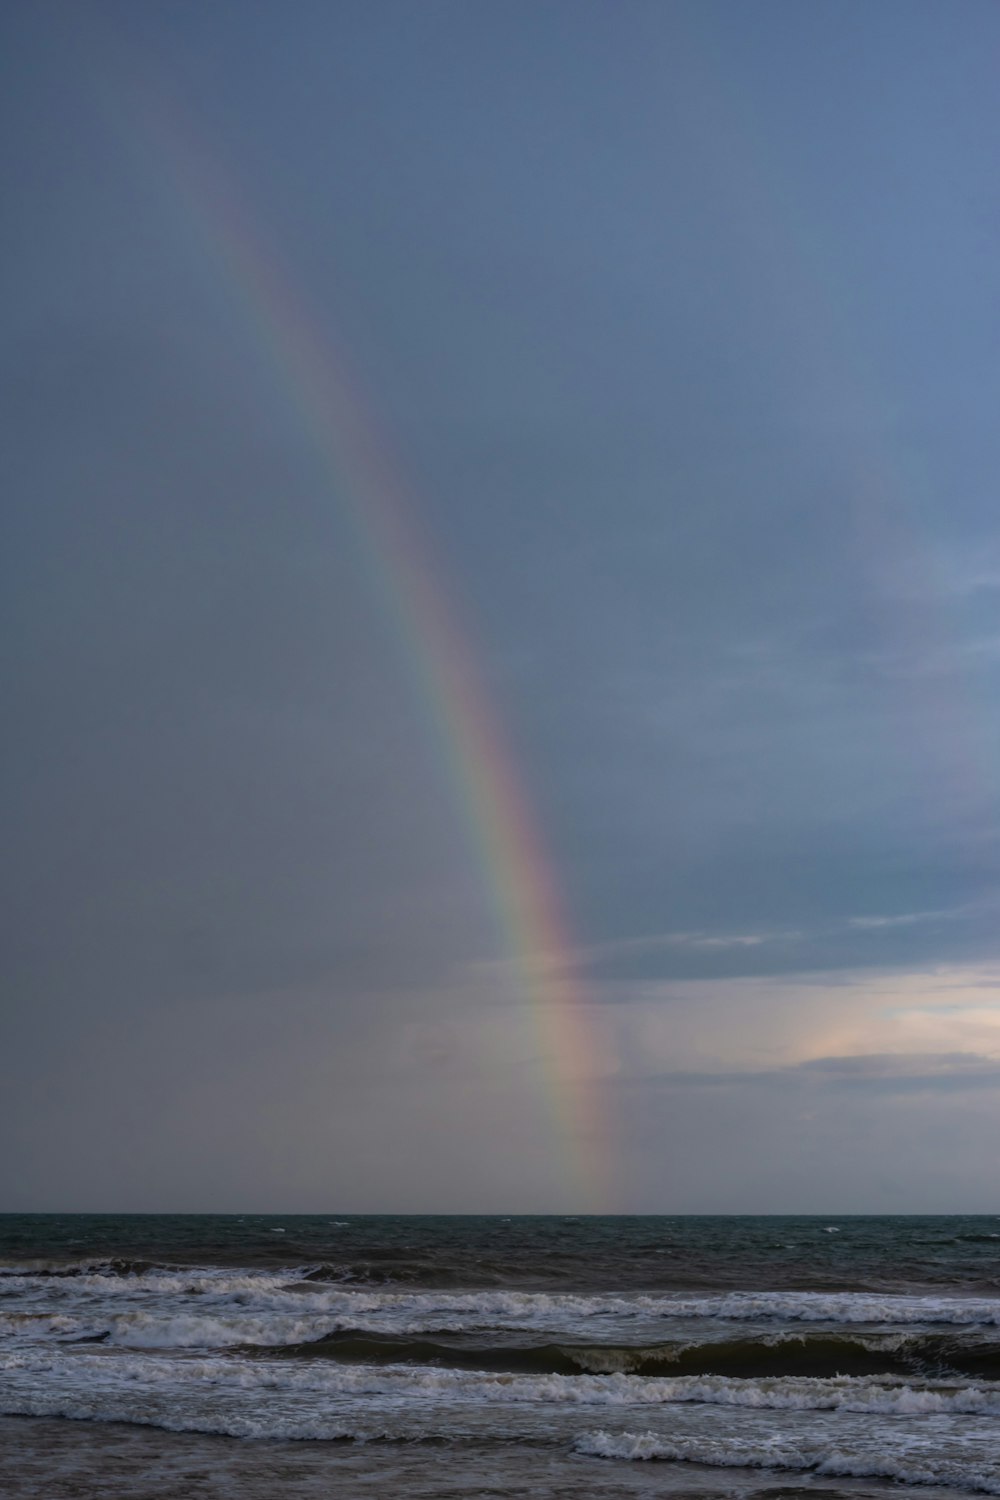 a rainbow in the sky over the ocean